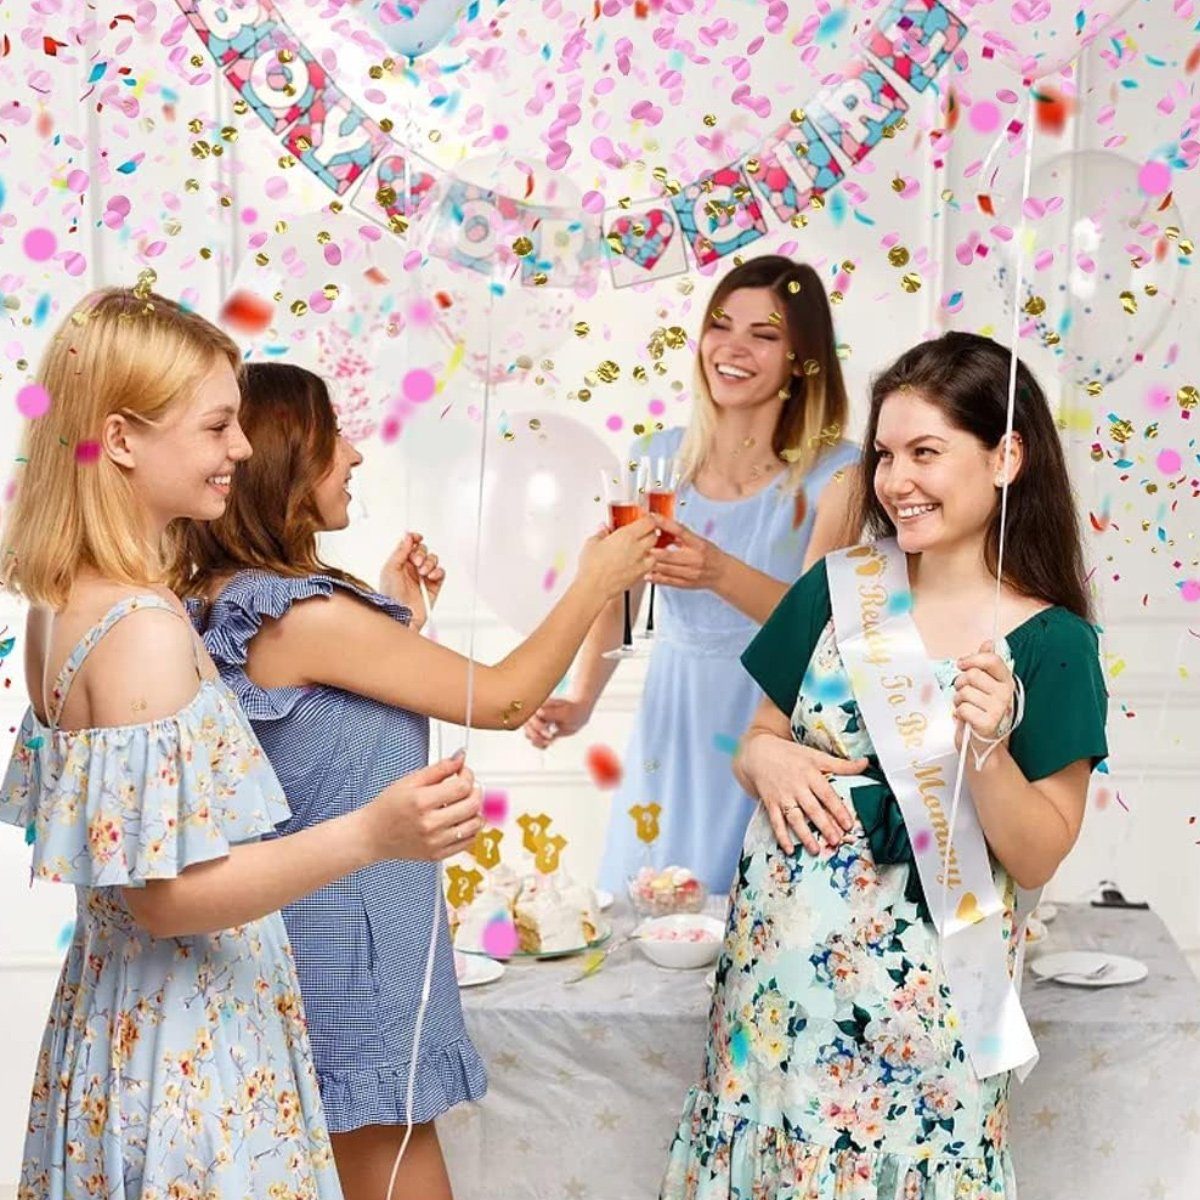 Jormftte Papierdekoration Mehrfarbige Runde Papier Party Deko Rosa Konfetti,für Hochzeit,Geburtstag